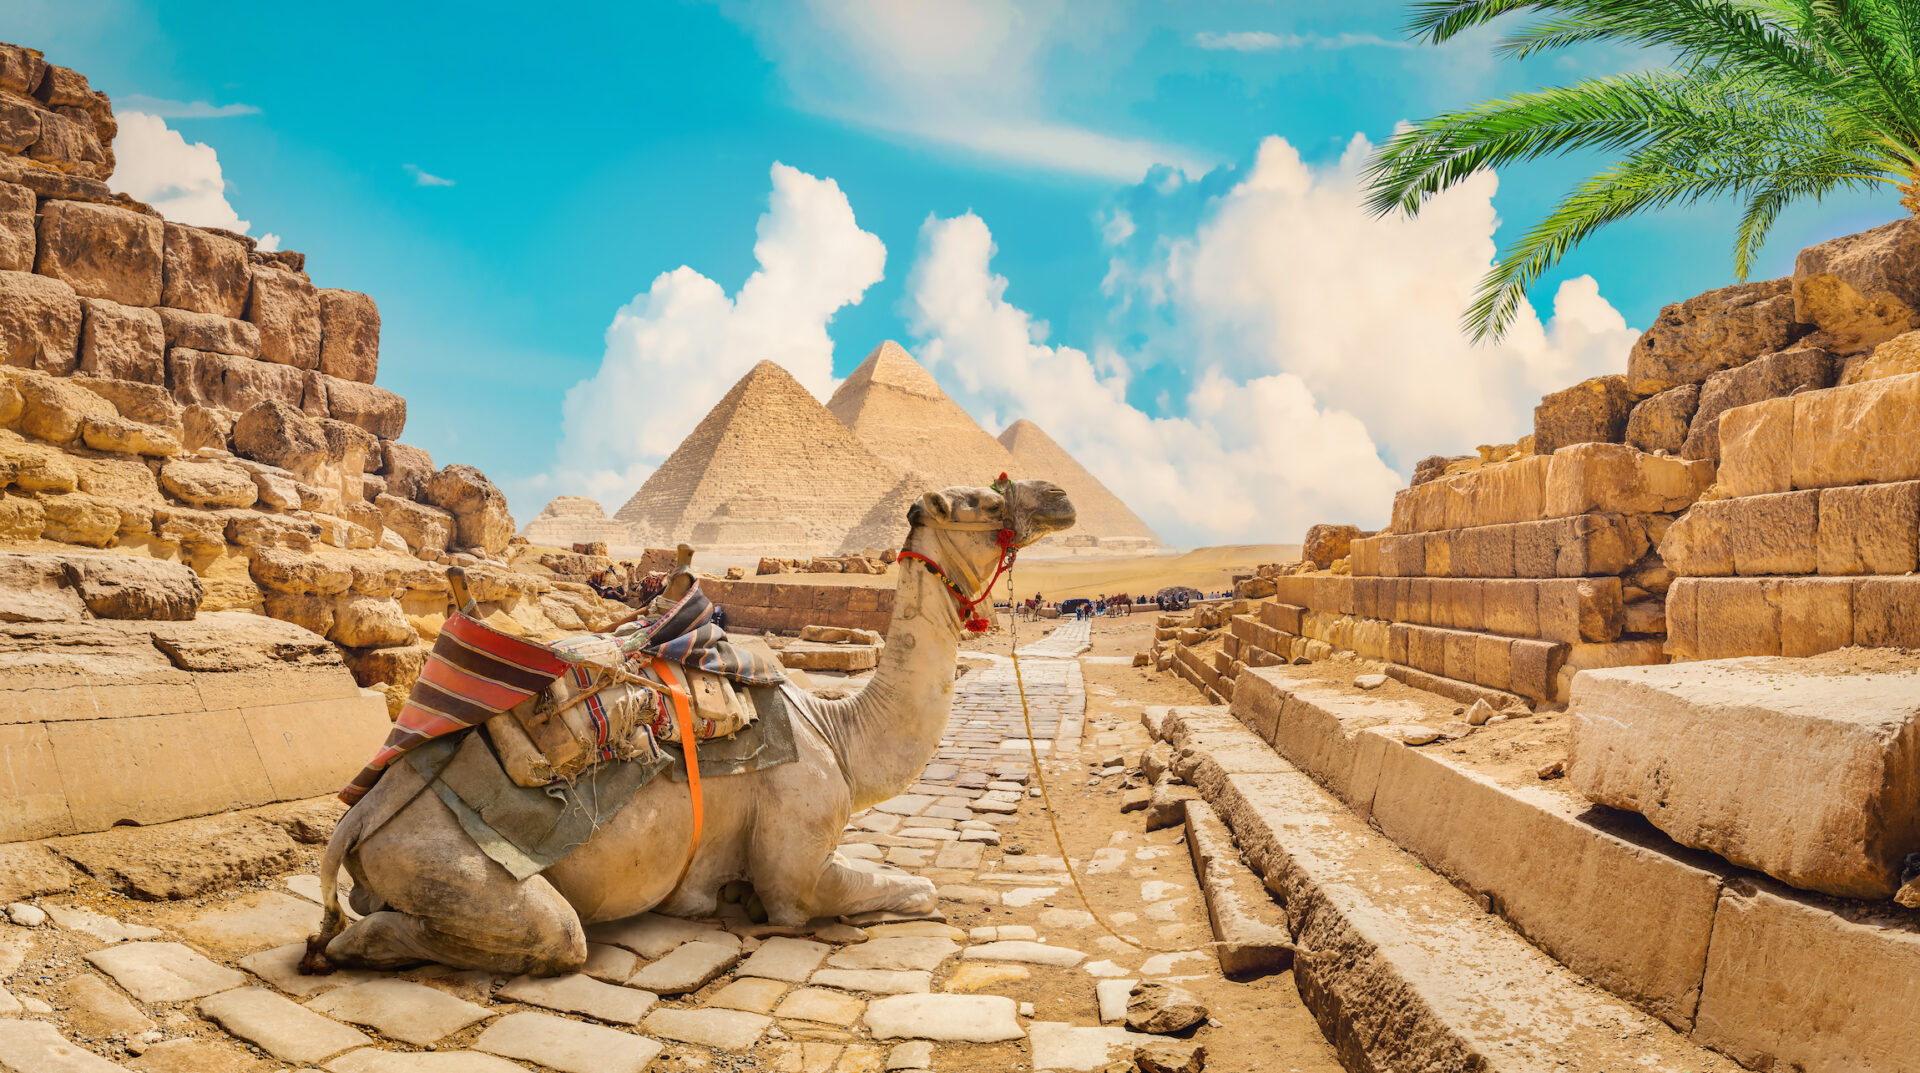 Wielbłąd w pobliżu piramid na gorącej pustyni w Egipcie